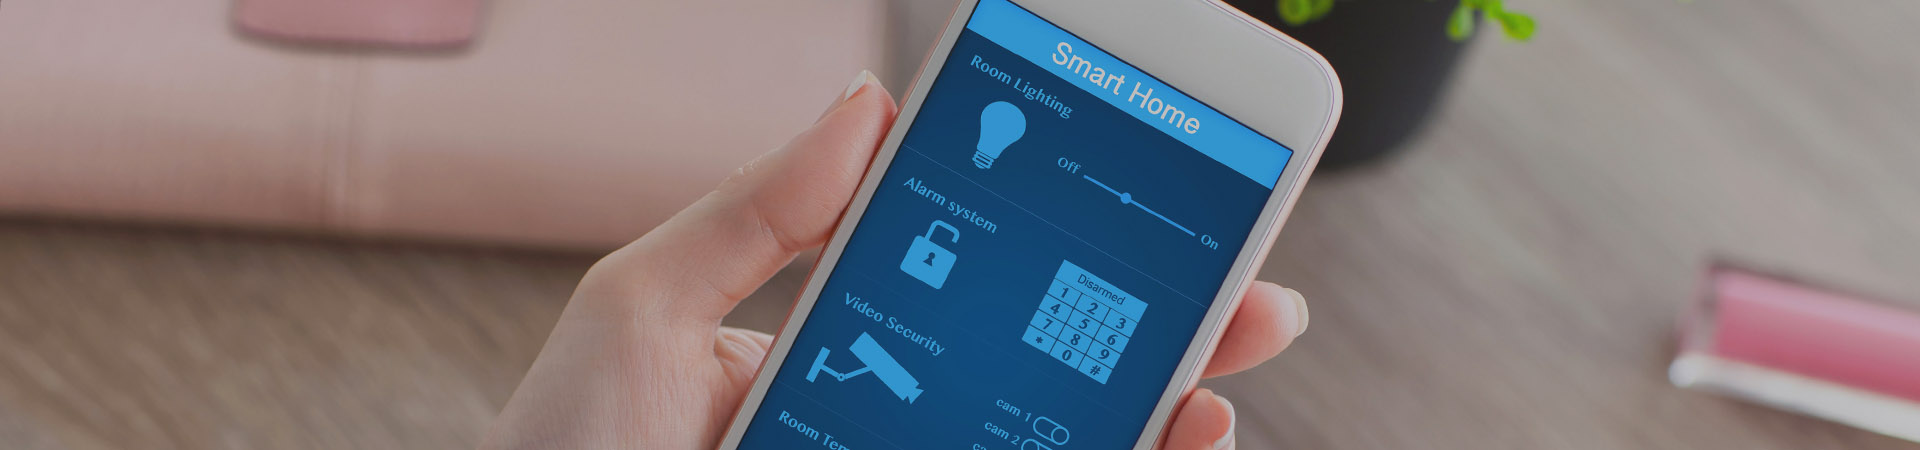 Entwicklung einer Android-App zur intelligenten Haussteuerung